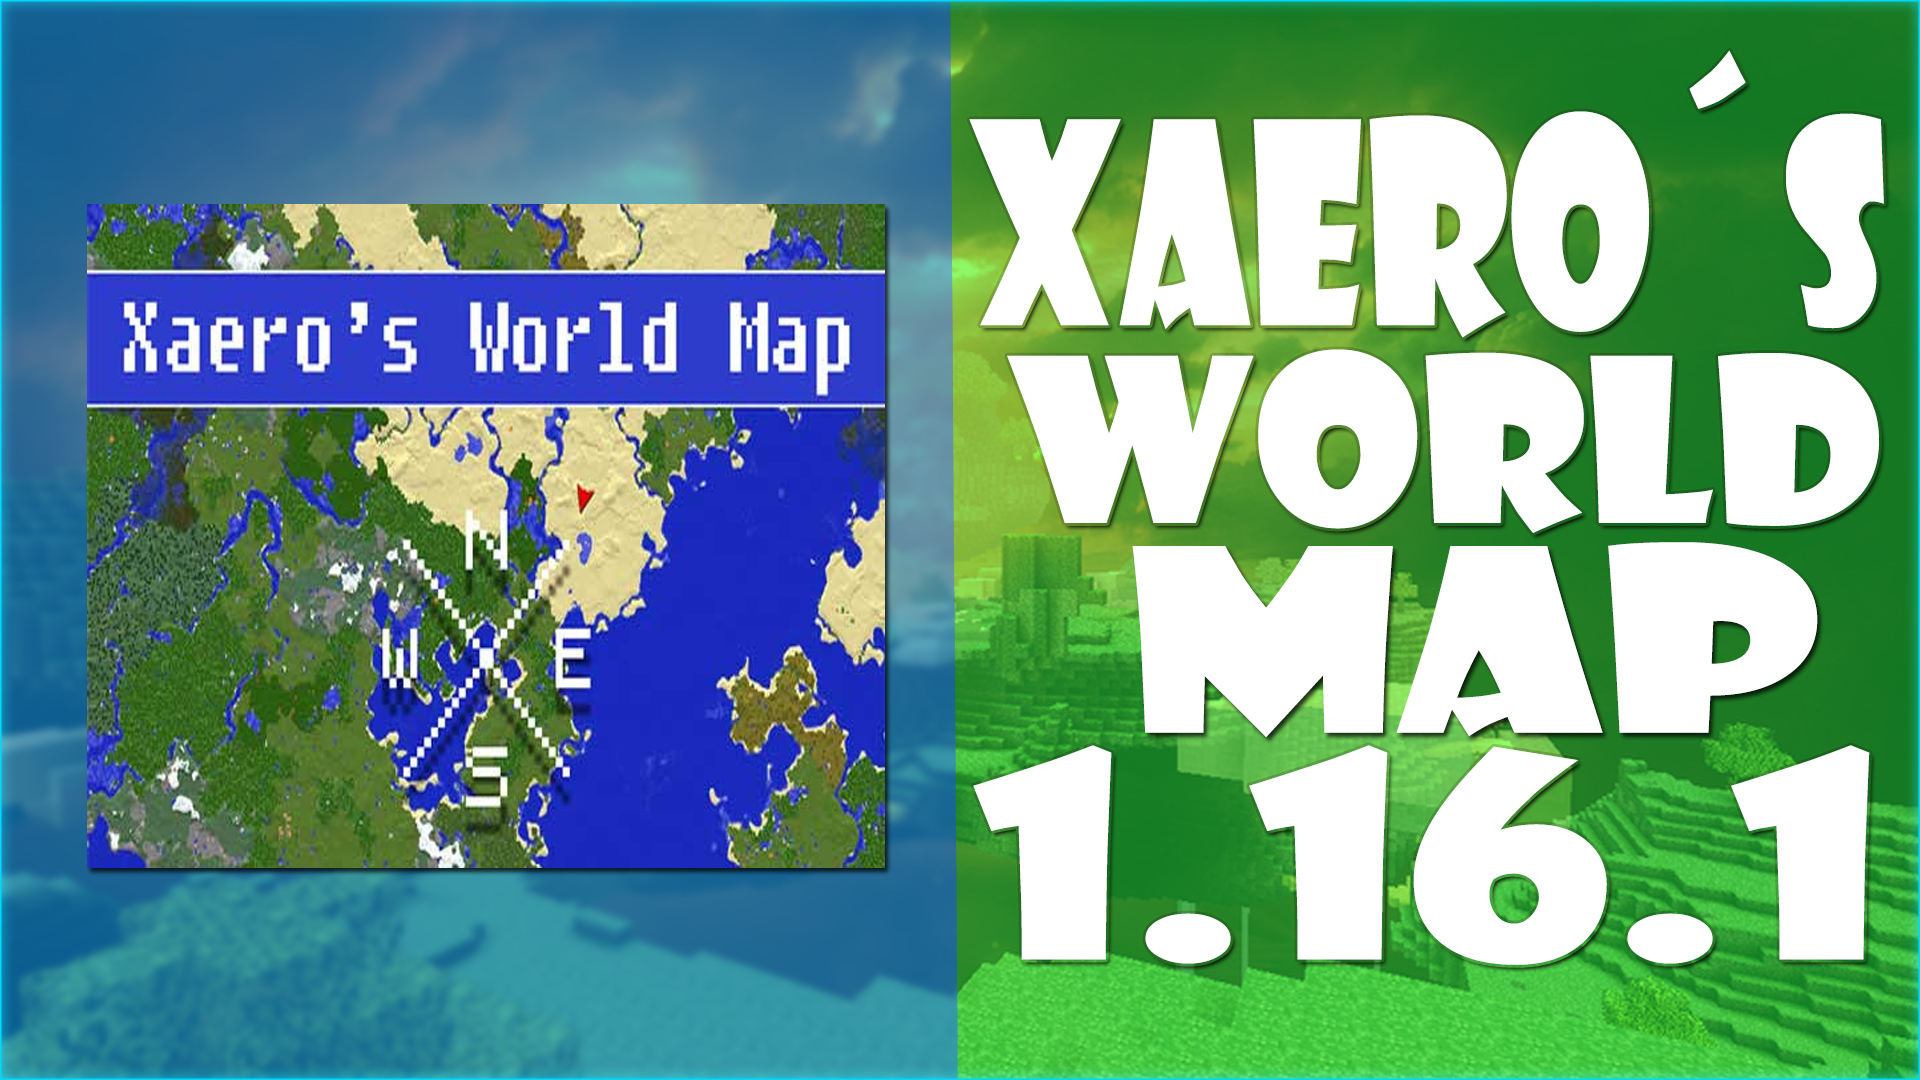 Xaeros world 1.16 5. Xaeros World Map. Xaero World Map. Xaeros World Map 1.16.5. Minecraft Xaero's World Map.